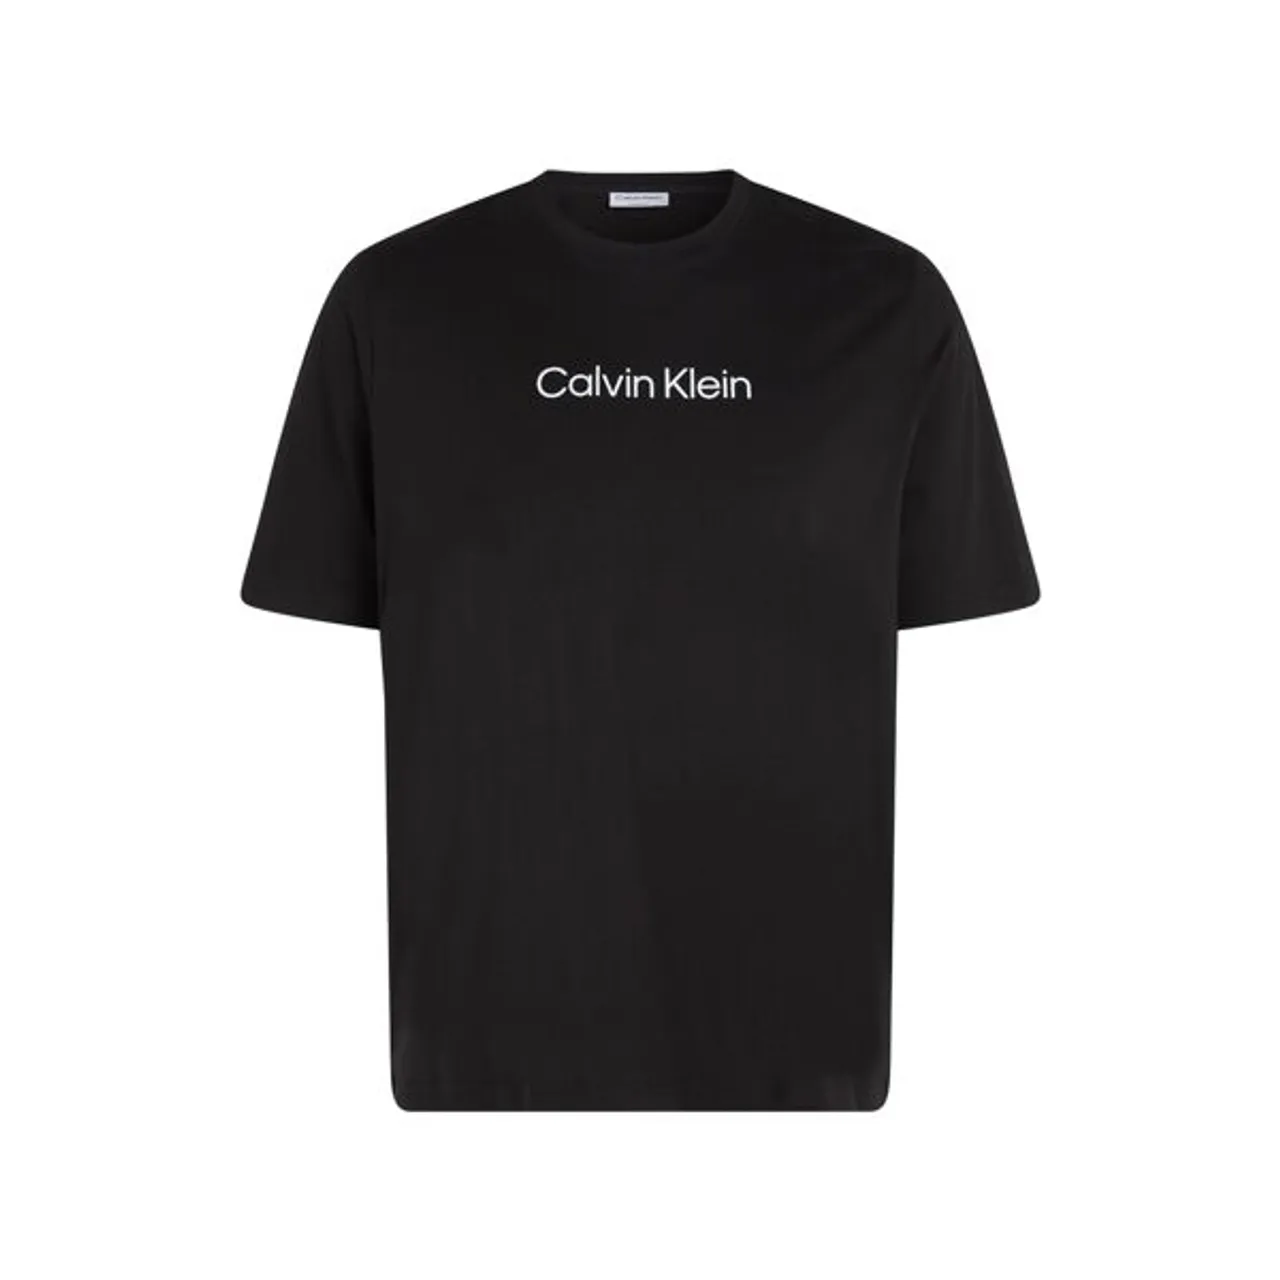 T-Shirt CALVIN KLEIN BIG&TALL "BT-HERO LOGO COMFORT T-SHIRT" Gr. XXXL, schwarz (ck black) Herren Shirts T-Shirts